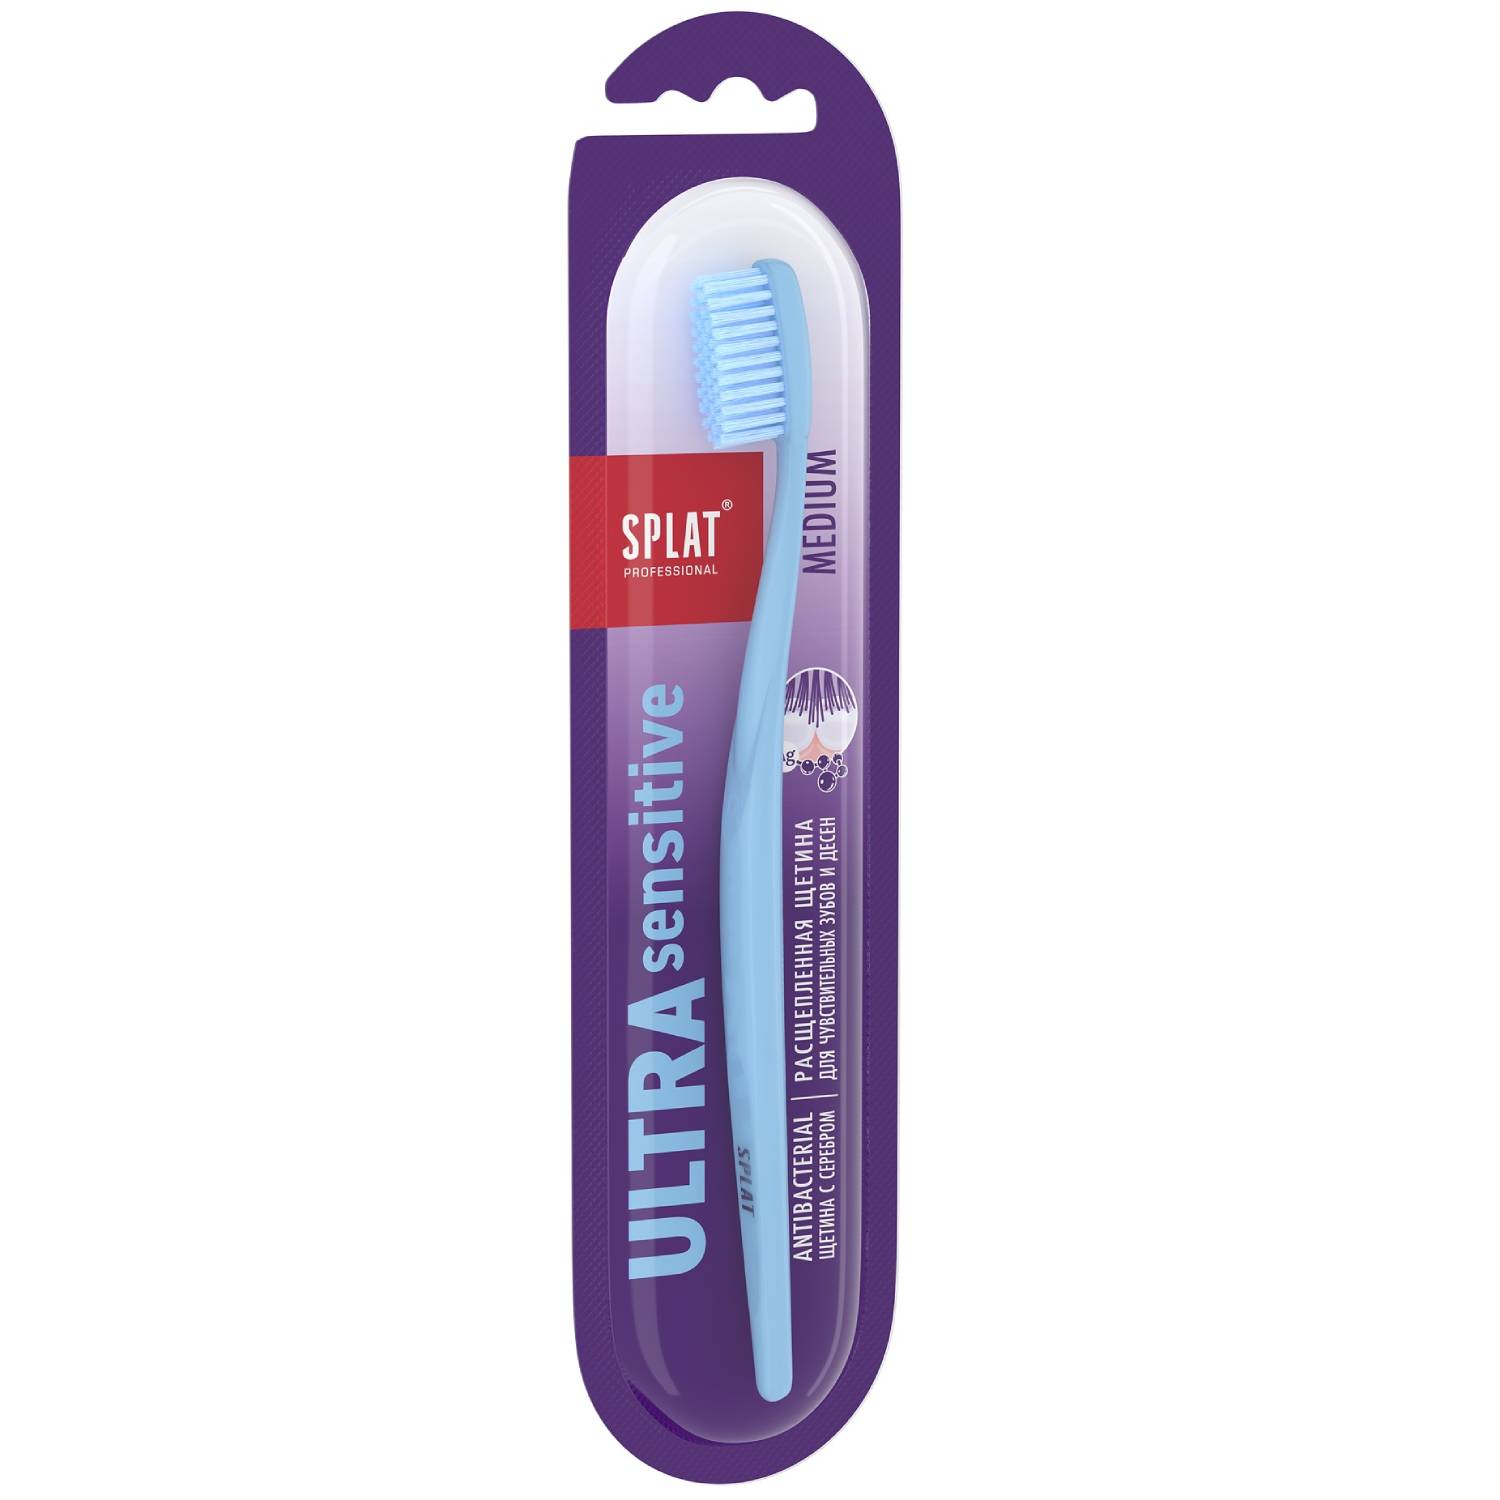 Splat Инновационная зубная щетка Sensitive средней жесткости 12+ (Splat, Professional) зубная щётка splat professional ultra sensitive soft цвет микс